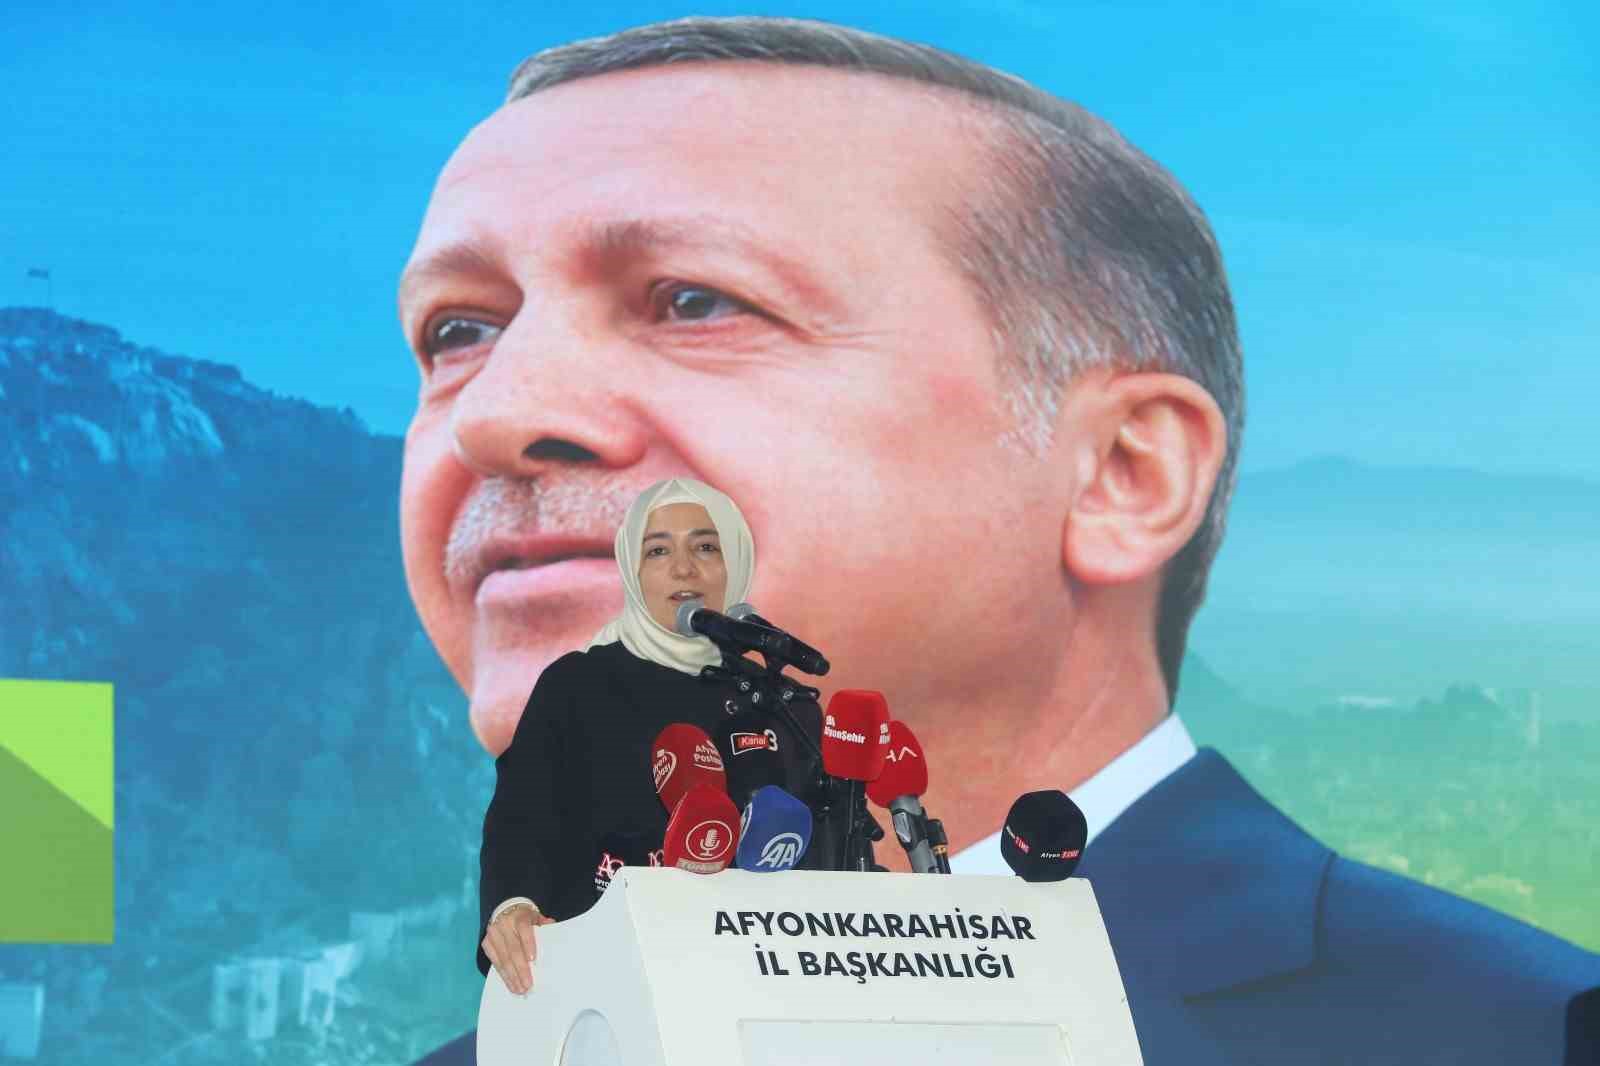 AK Parti’li Fatma Betül Sayan Kaya: “Türkiye Yüzyılı’nın gerçek belediyecilik anlayışını Afyonkarahisar’da inşa edeceğiz”